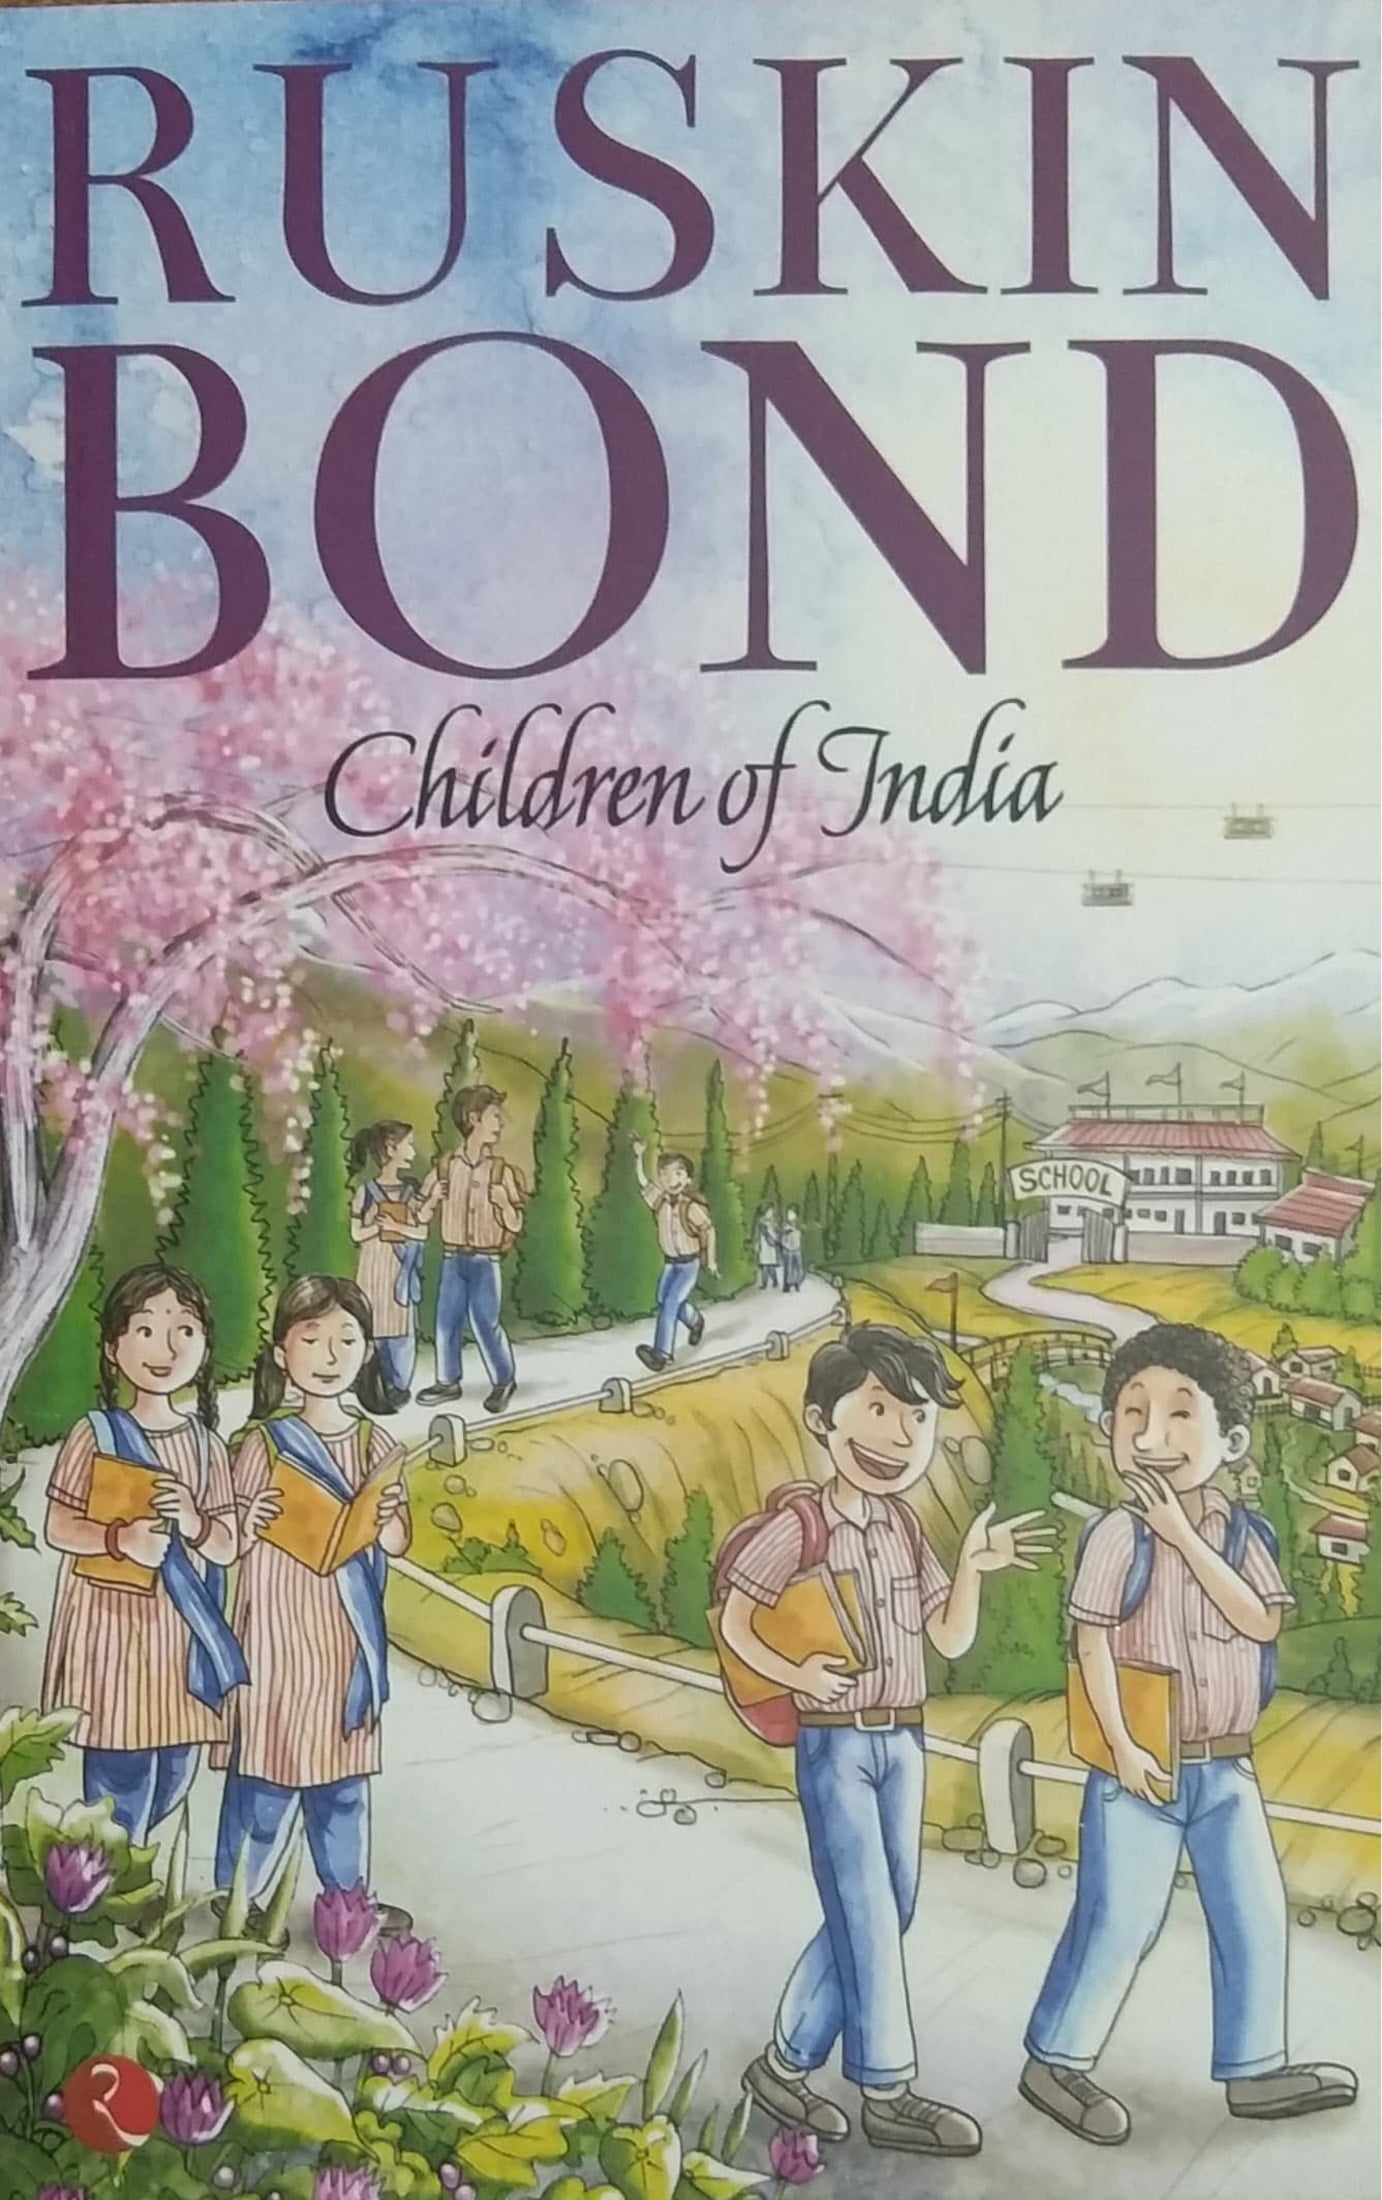 Children of India